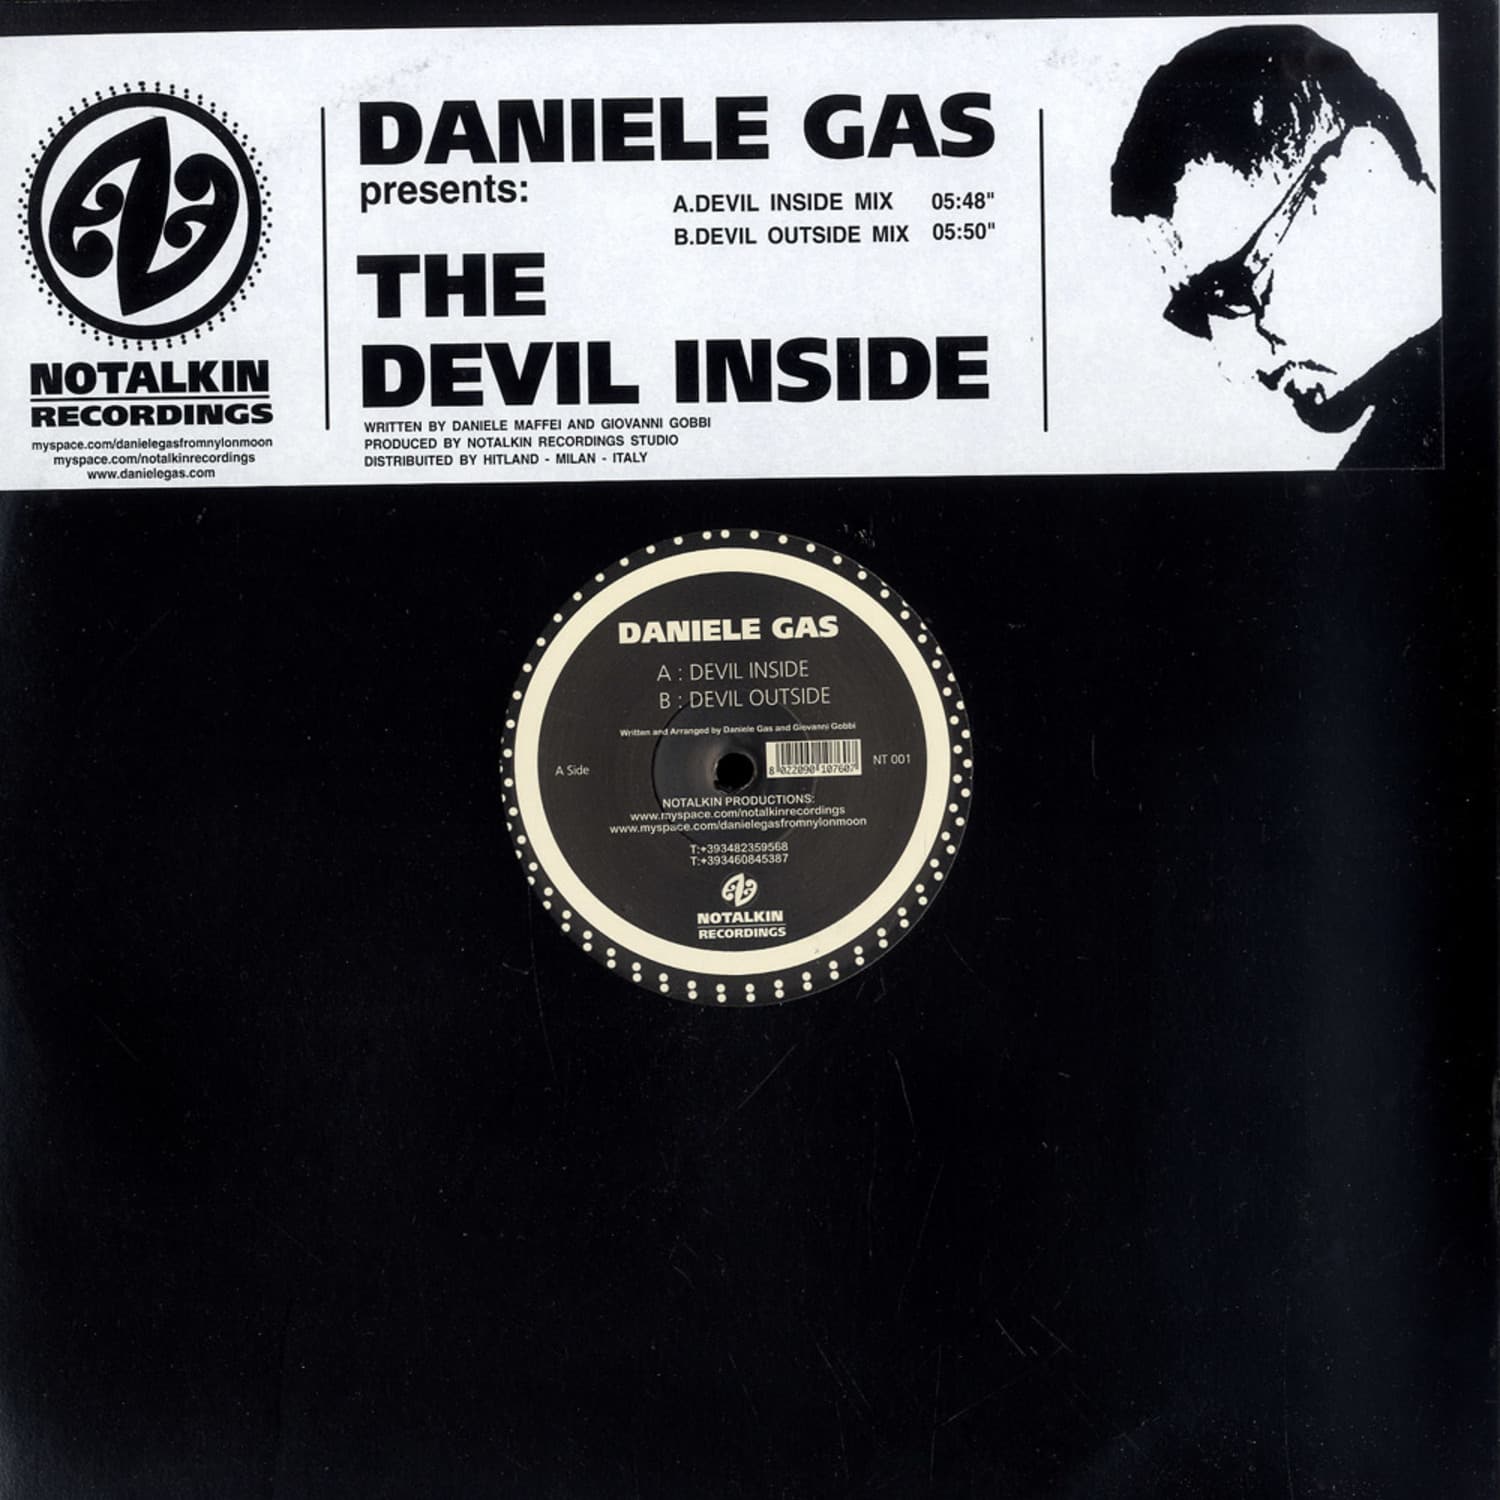 Daniele Gas - THE DEVIL INSIDE